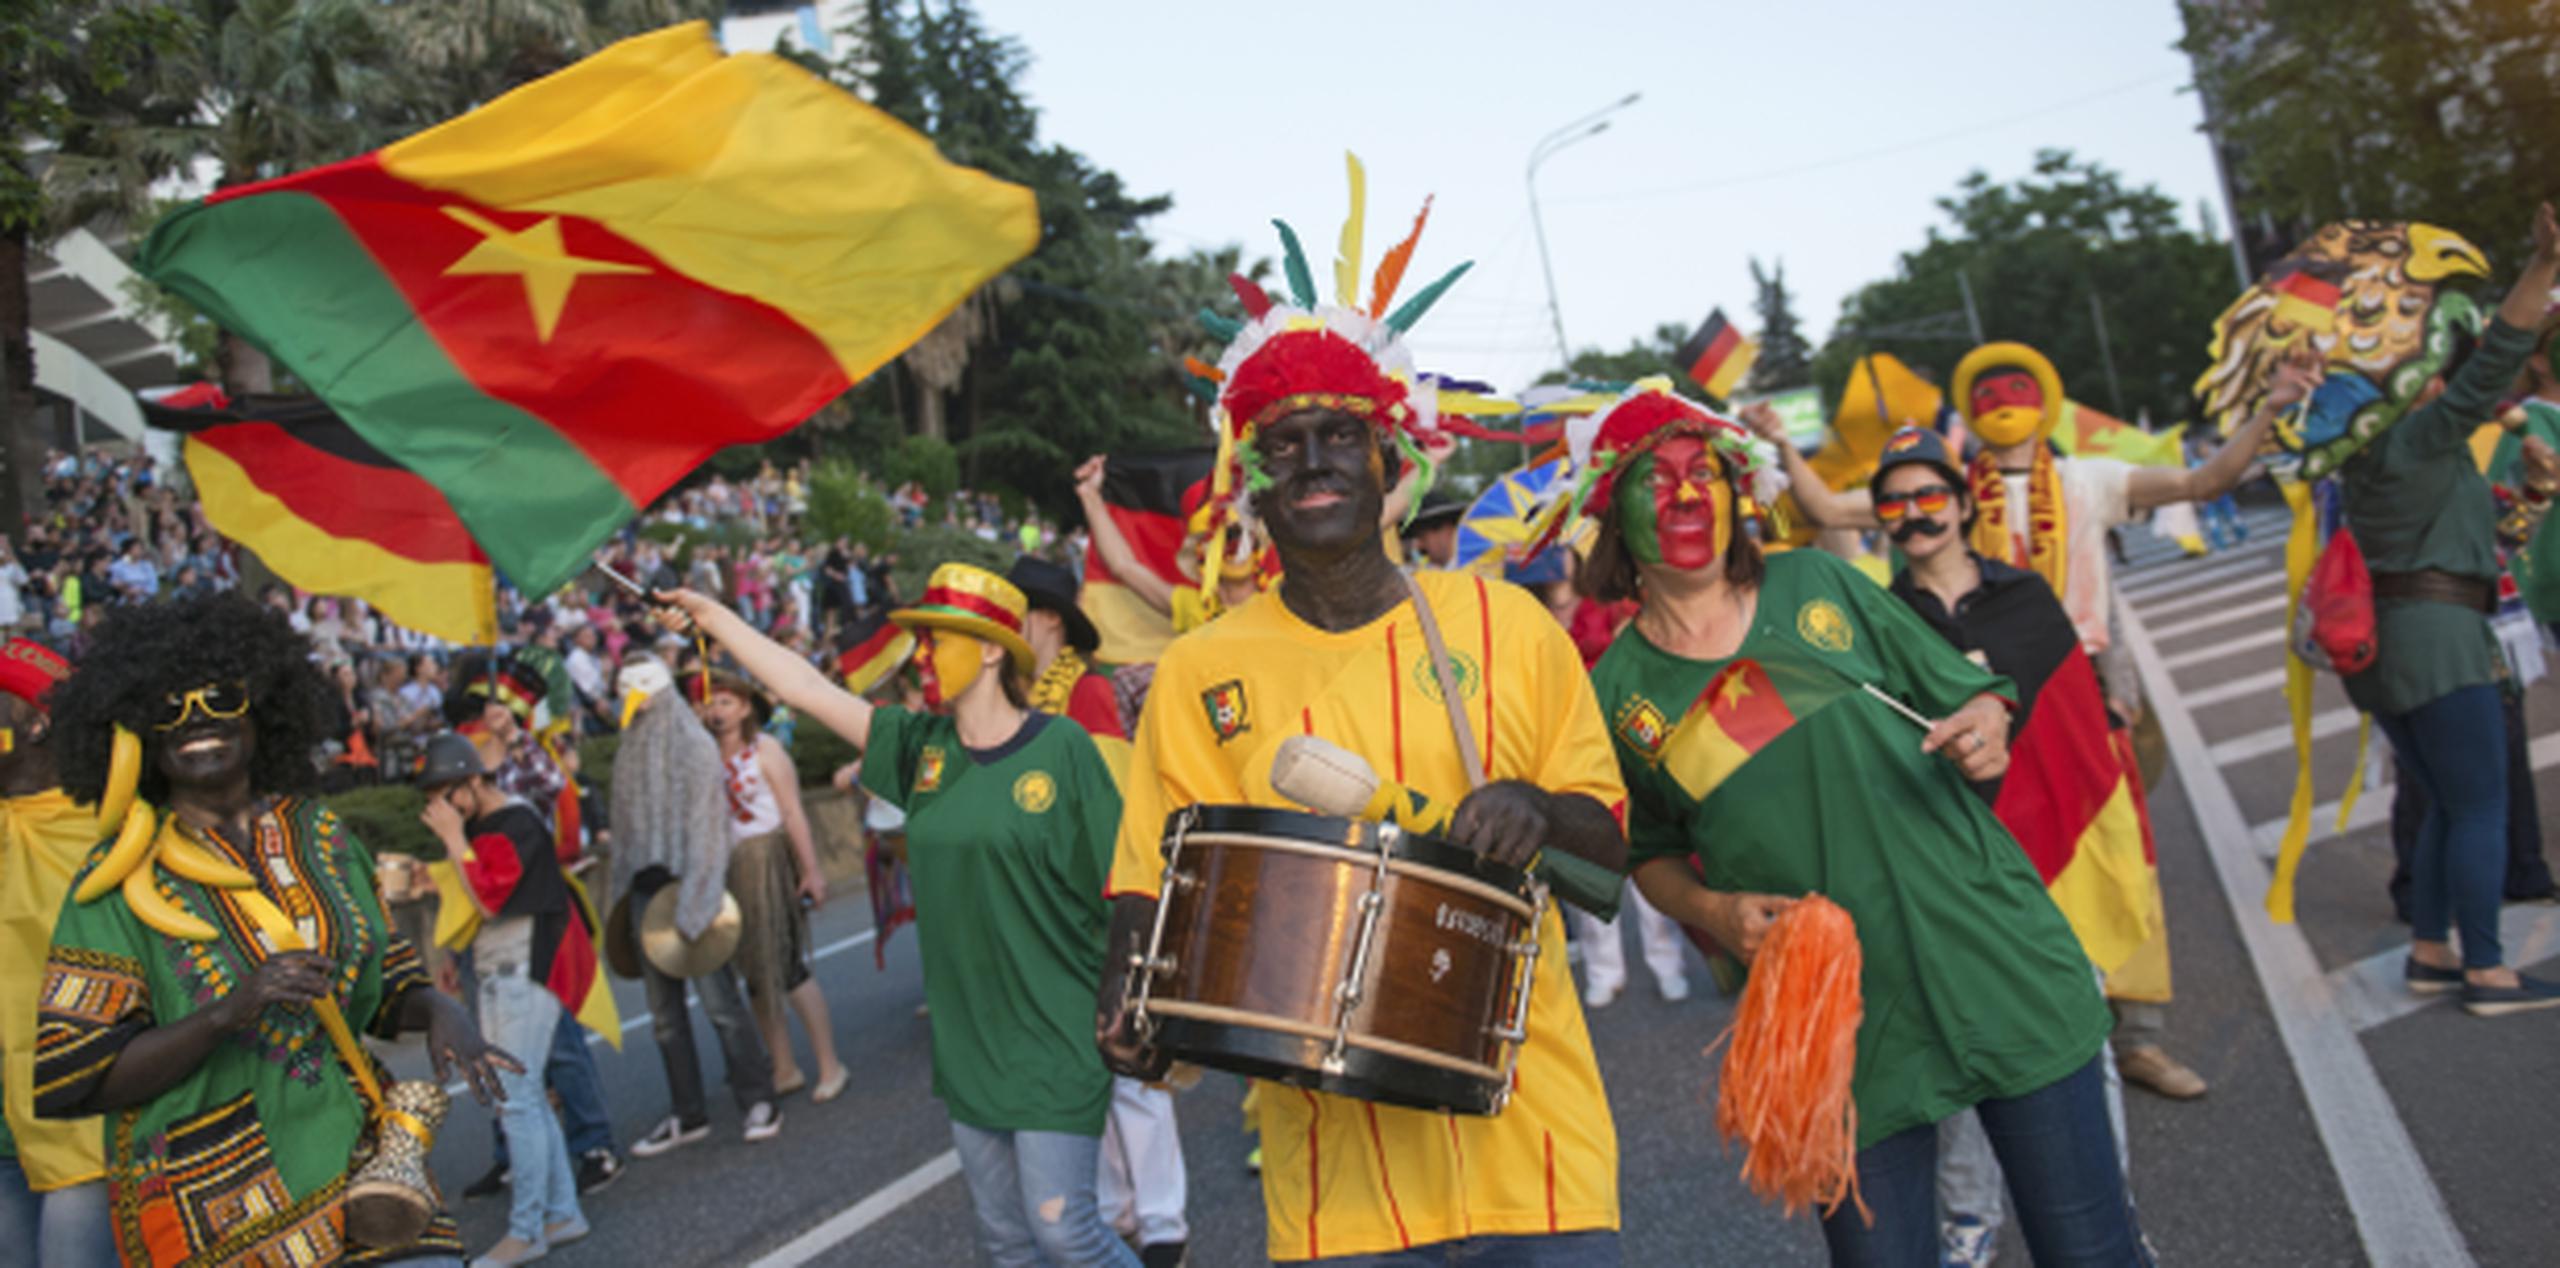 Personas con la cara pintada de negro y ropas africanas, llevando la bandera de Camerún, participaron en un desfile en Sochi, previo a los partidos de la Copa Confederaciones. (AP/Artur Lebedev)
